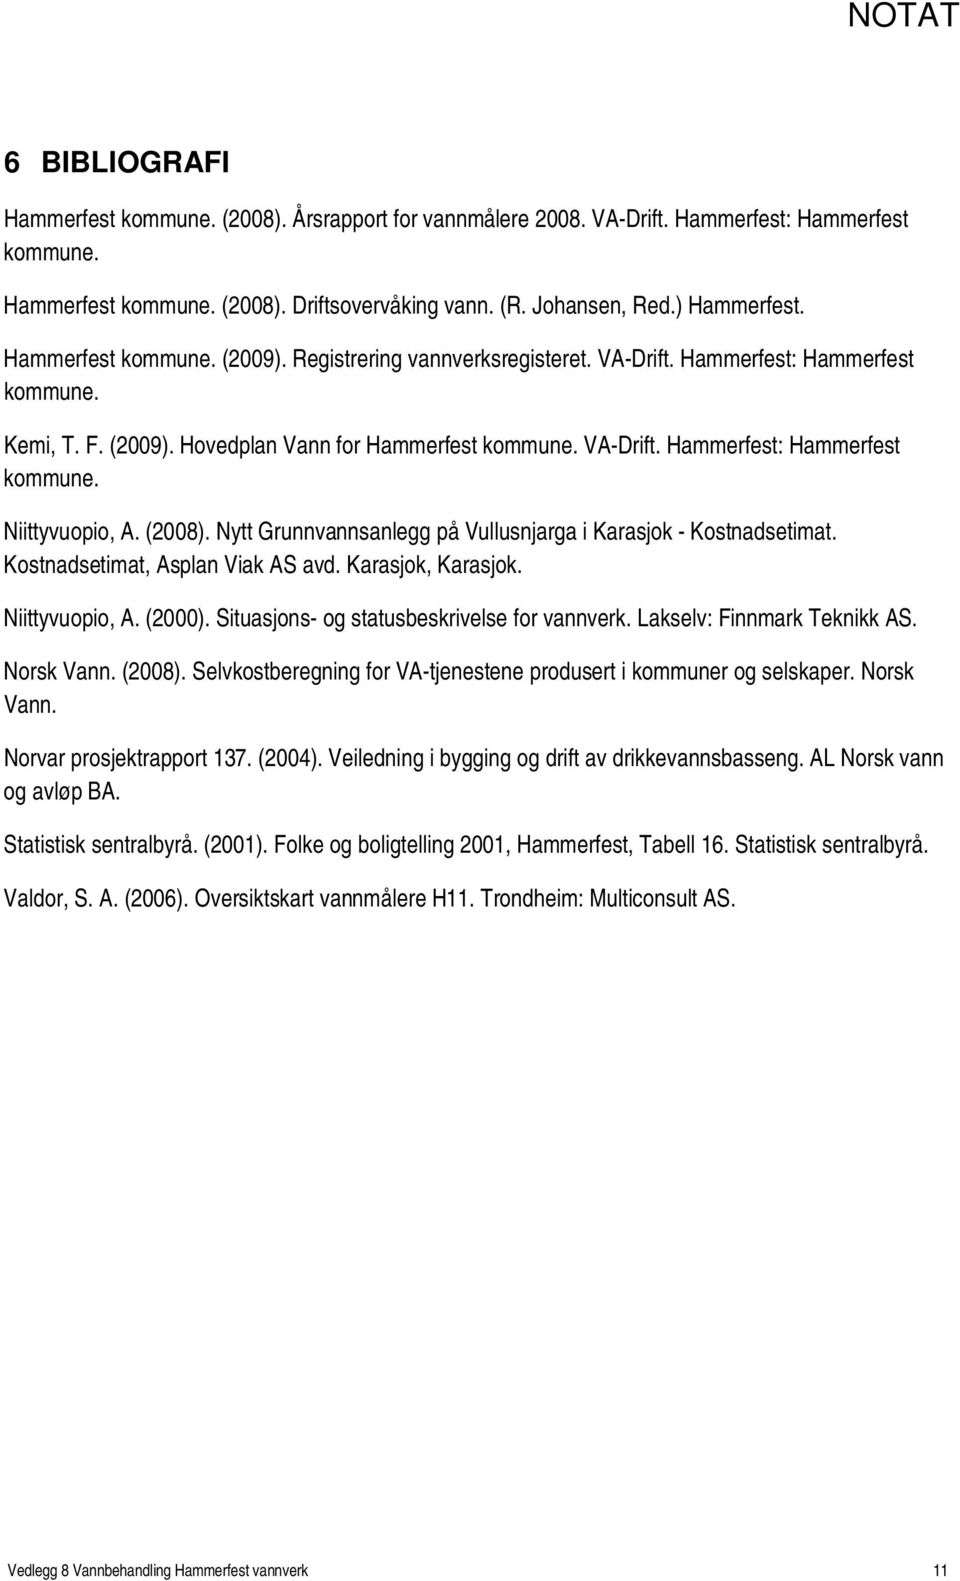 (2008). Nytt Grunnvannsanlegg på Vullusnjarga i Karasjok - Kostnadsetimat. Kostnadsetimat, Asplan Viak AS avd. Karasjok, Karasjok. Niittyvuopio, A. (2000).